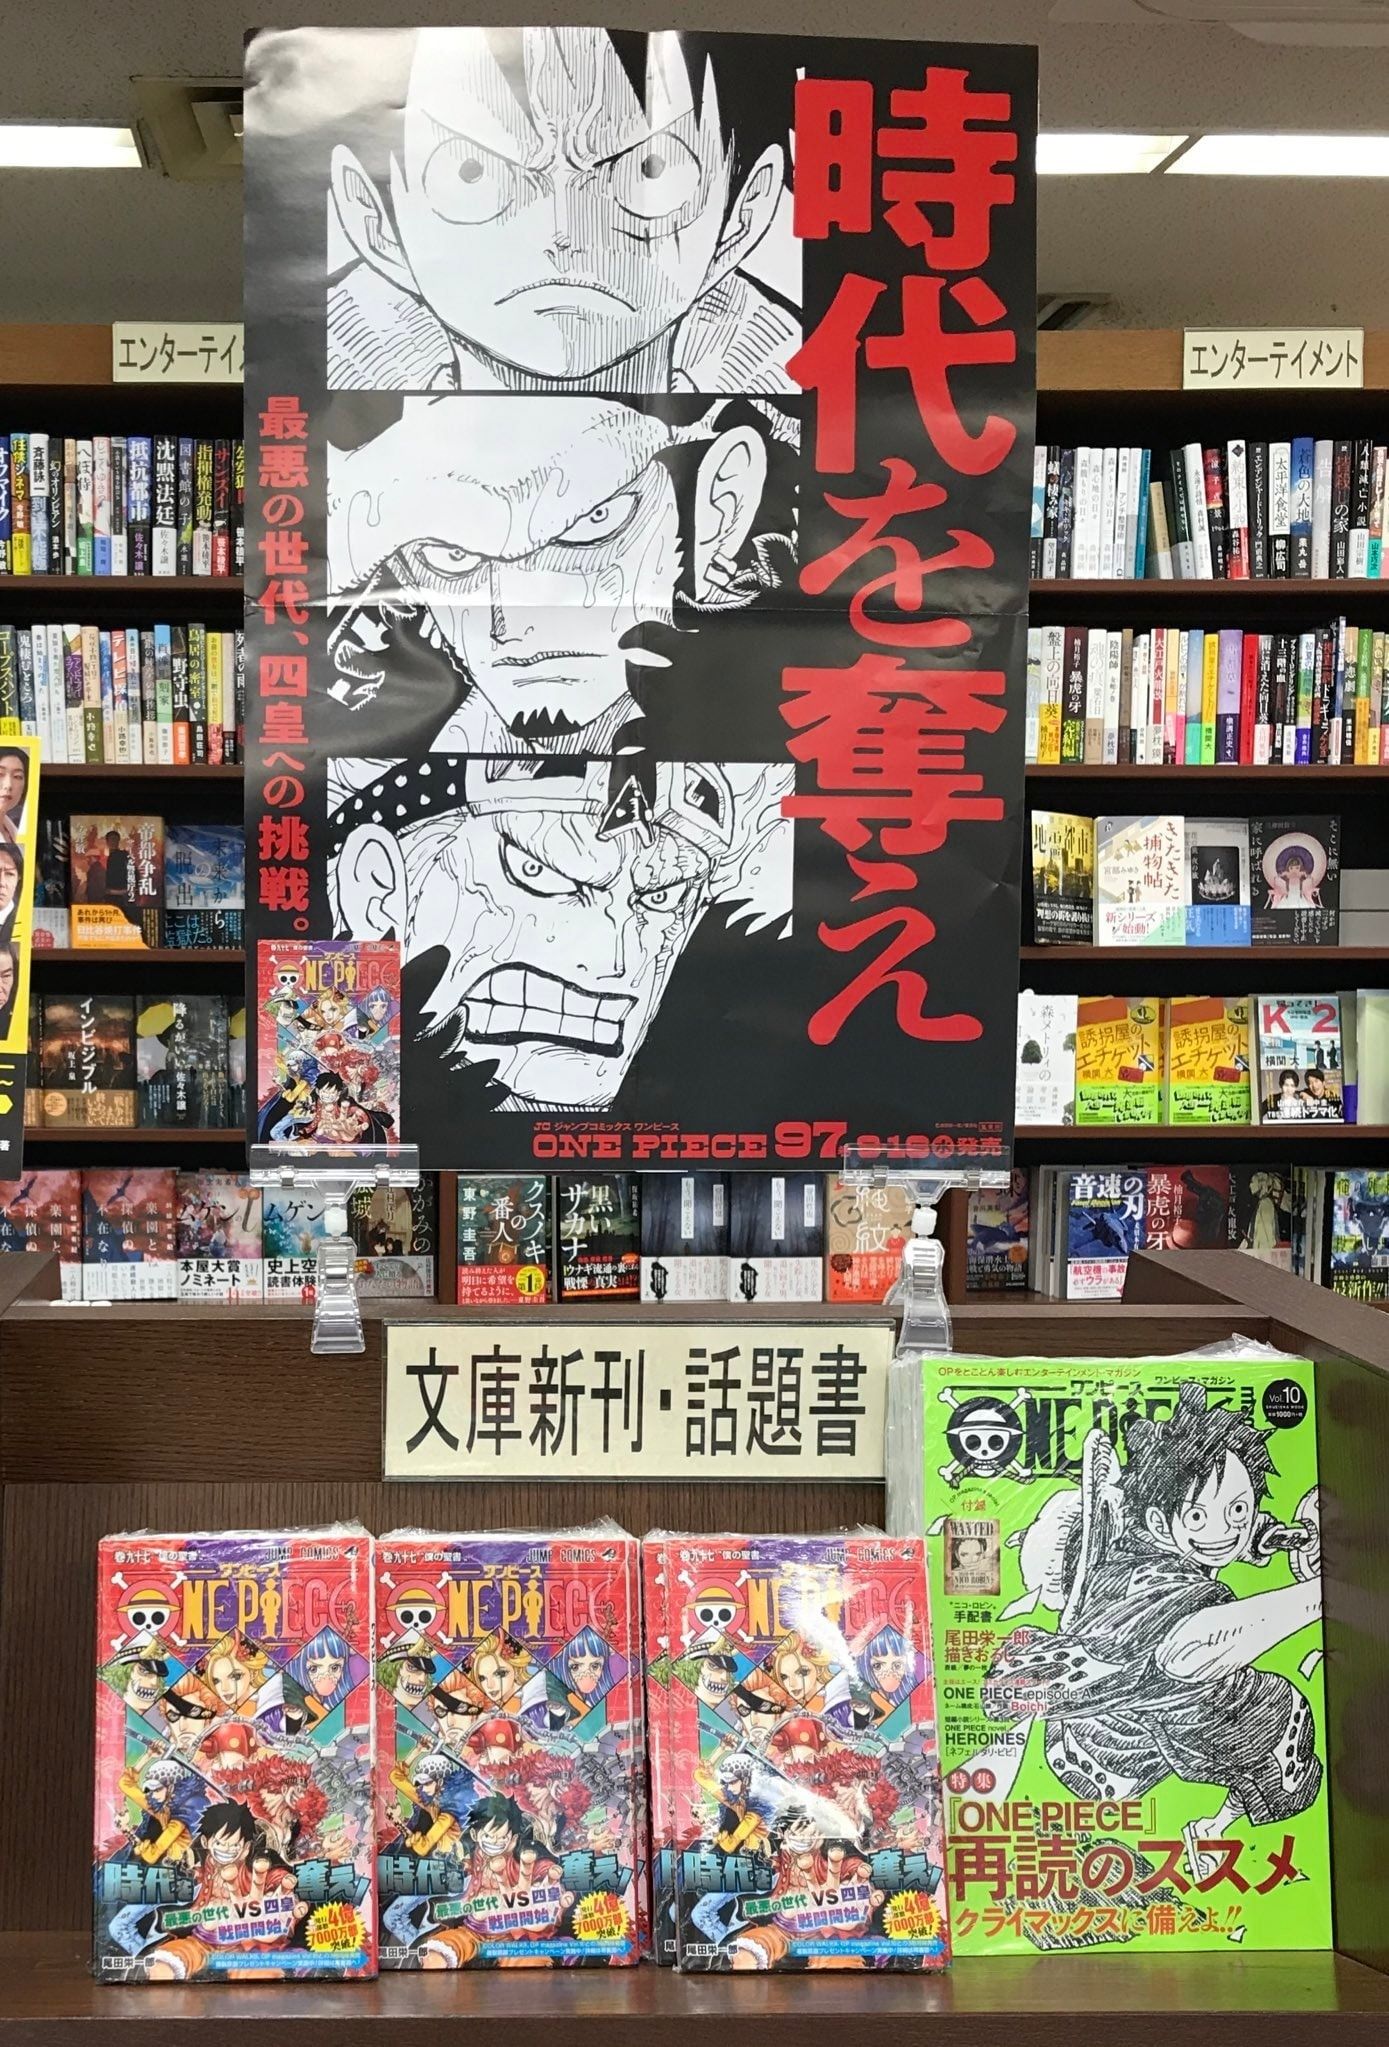 Bộ ba sản phẩm One Piece tập 97, One Piece Color Walk 9 và One Piece Magazine 10 và tấm banner quảng cáo Luffy - Law -Kid